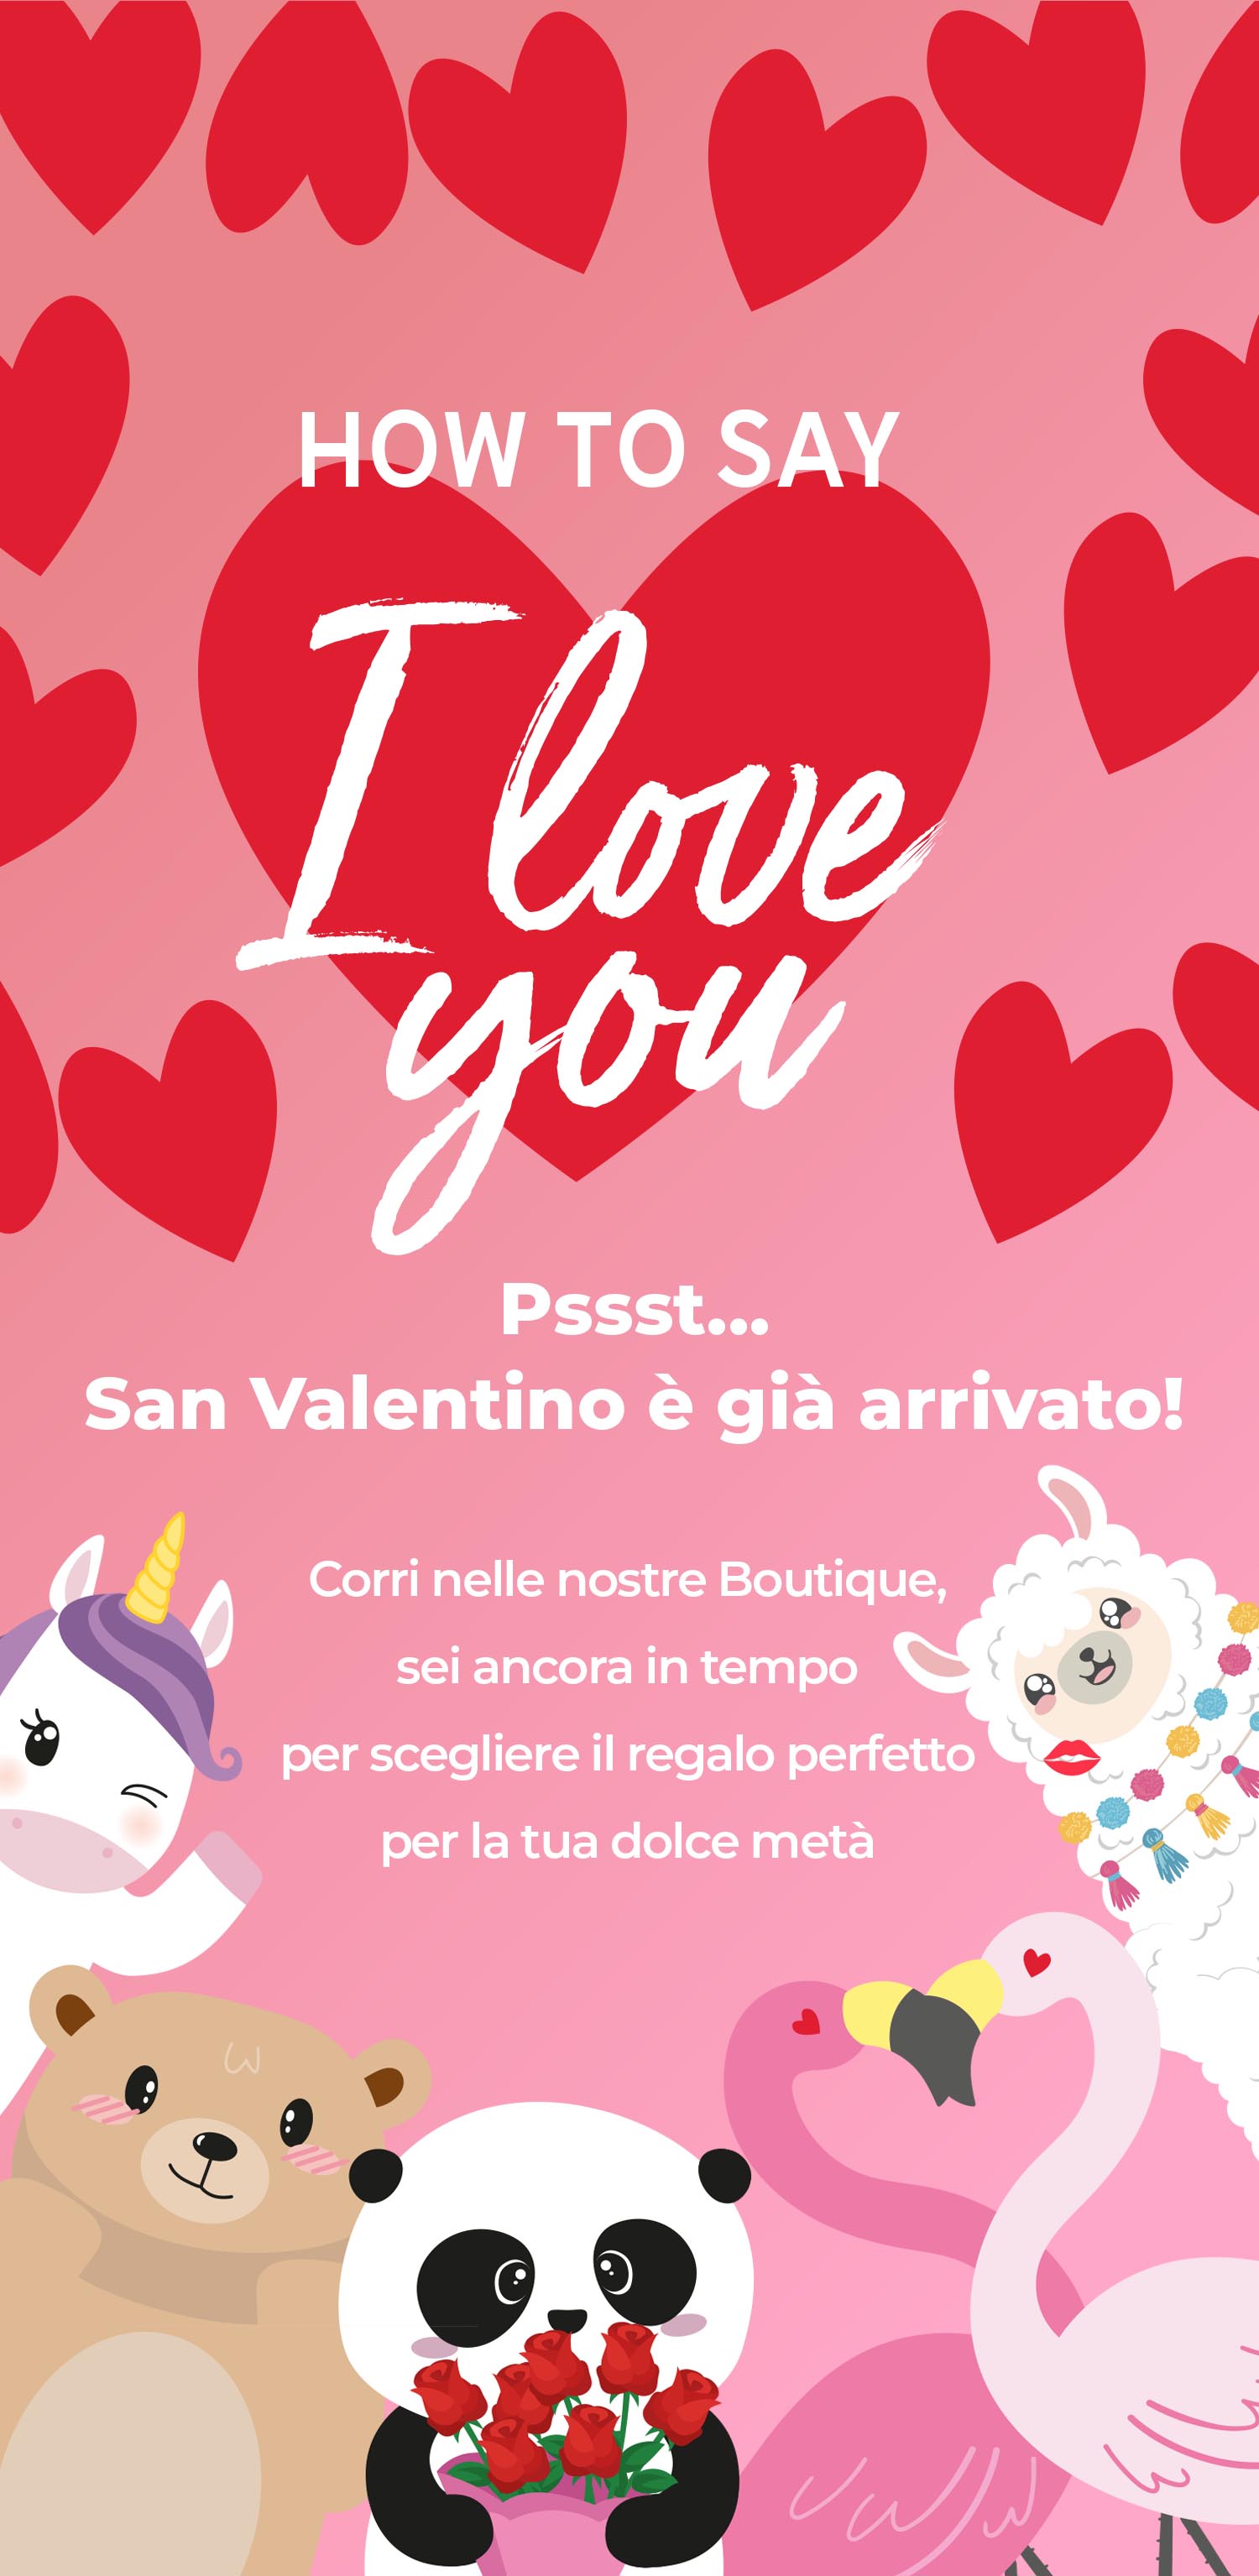 ❤️‍🔥 Serata romantica in vista? Corri in Boutique! ❤️‍🔥 - Legami Milano